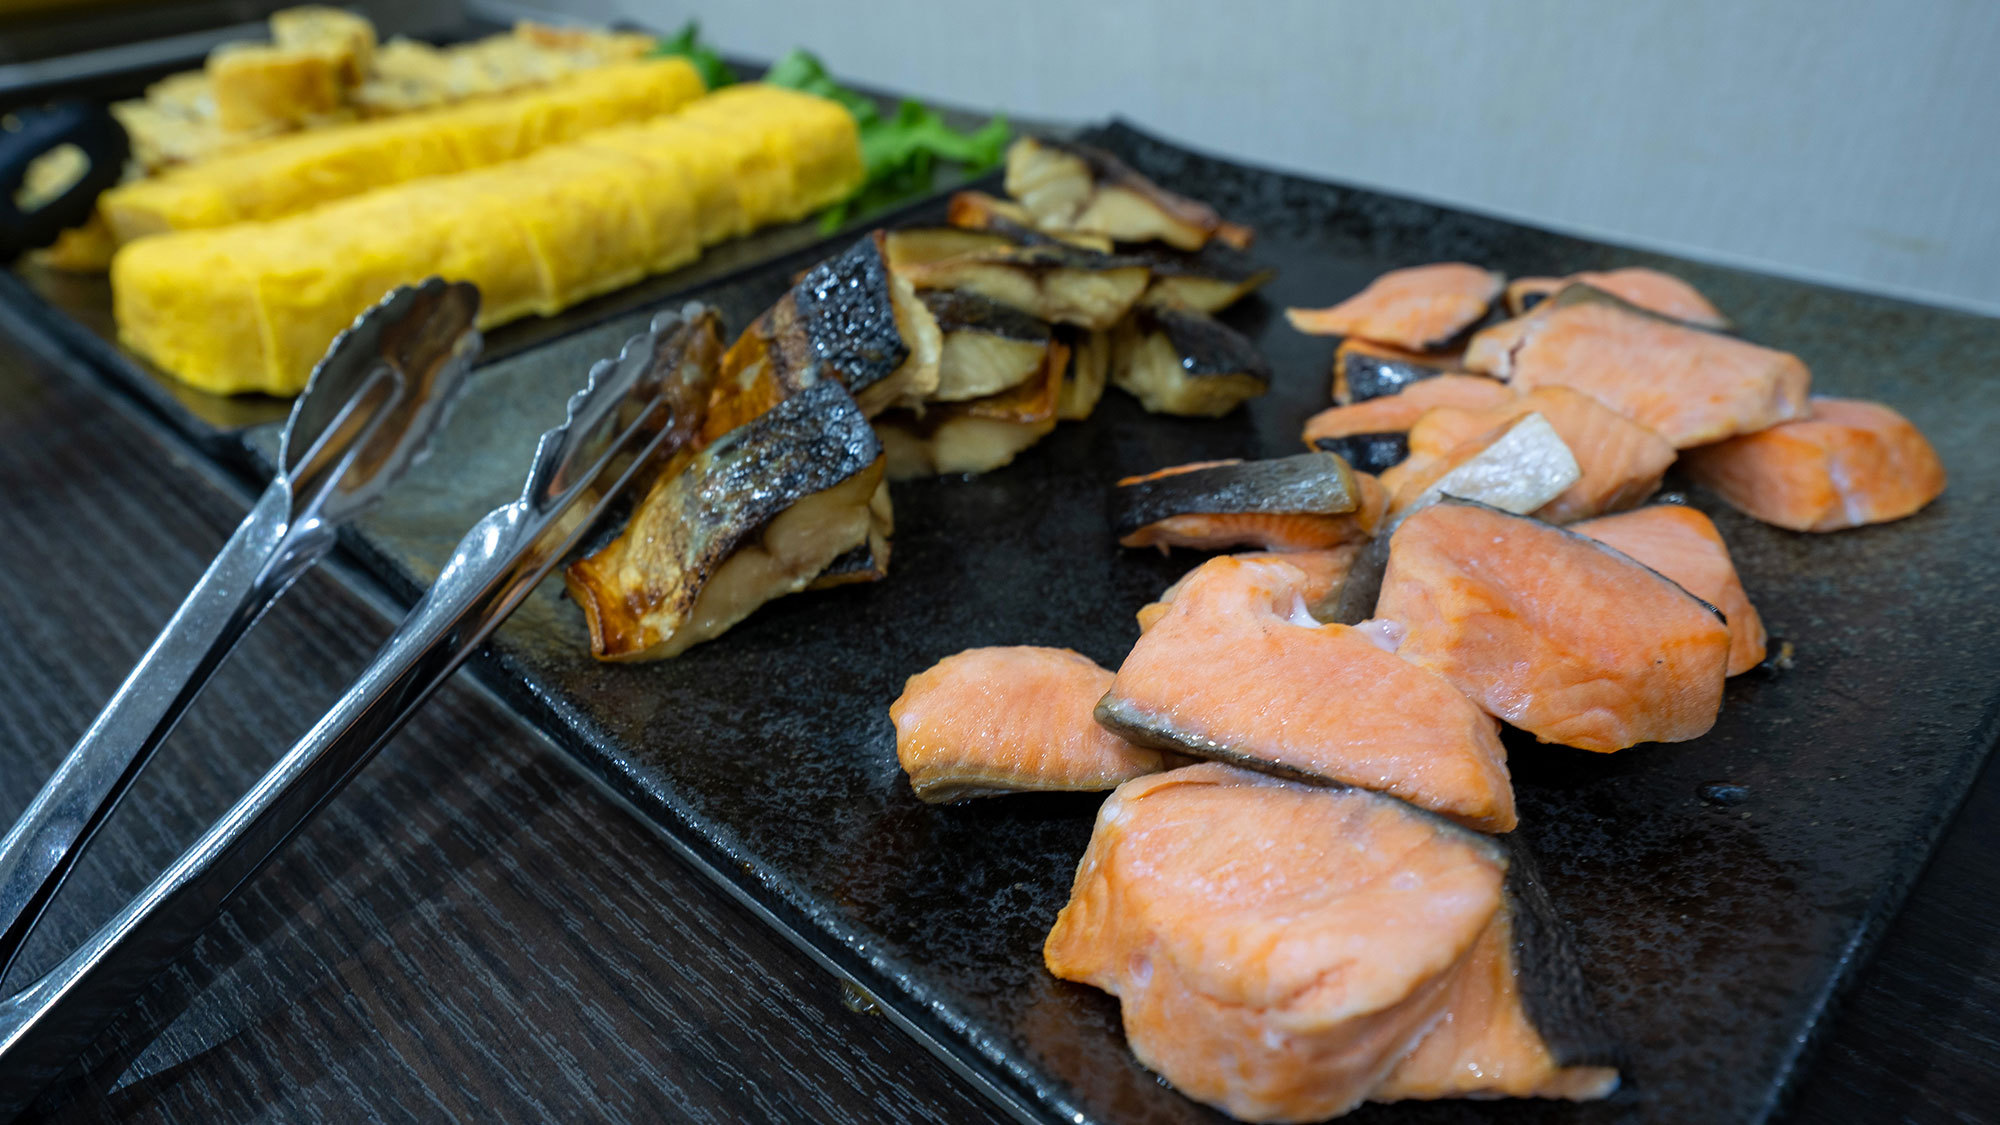 ・【朝食バイキング一例】和定食の定番・焼き魚